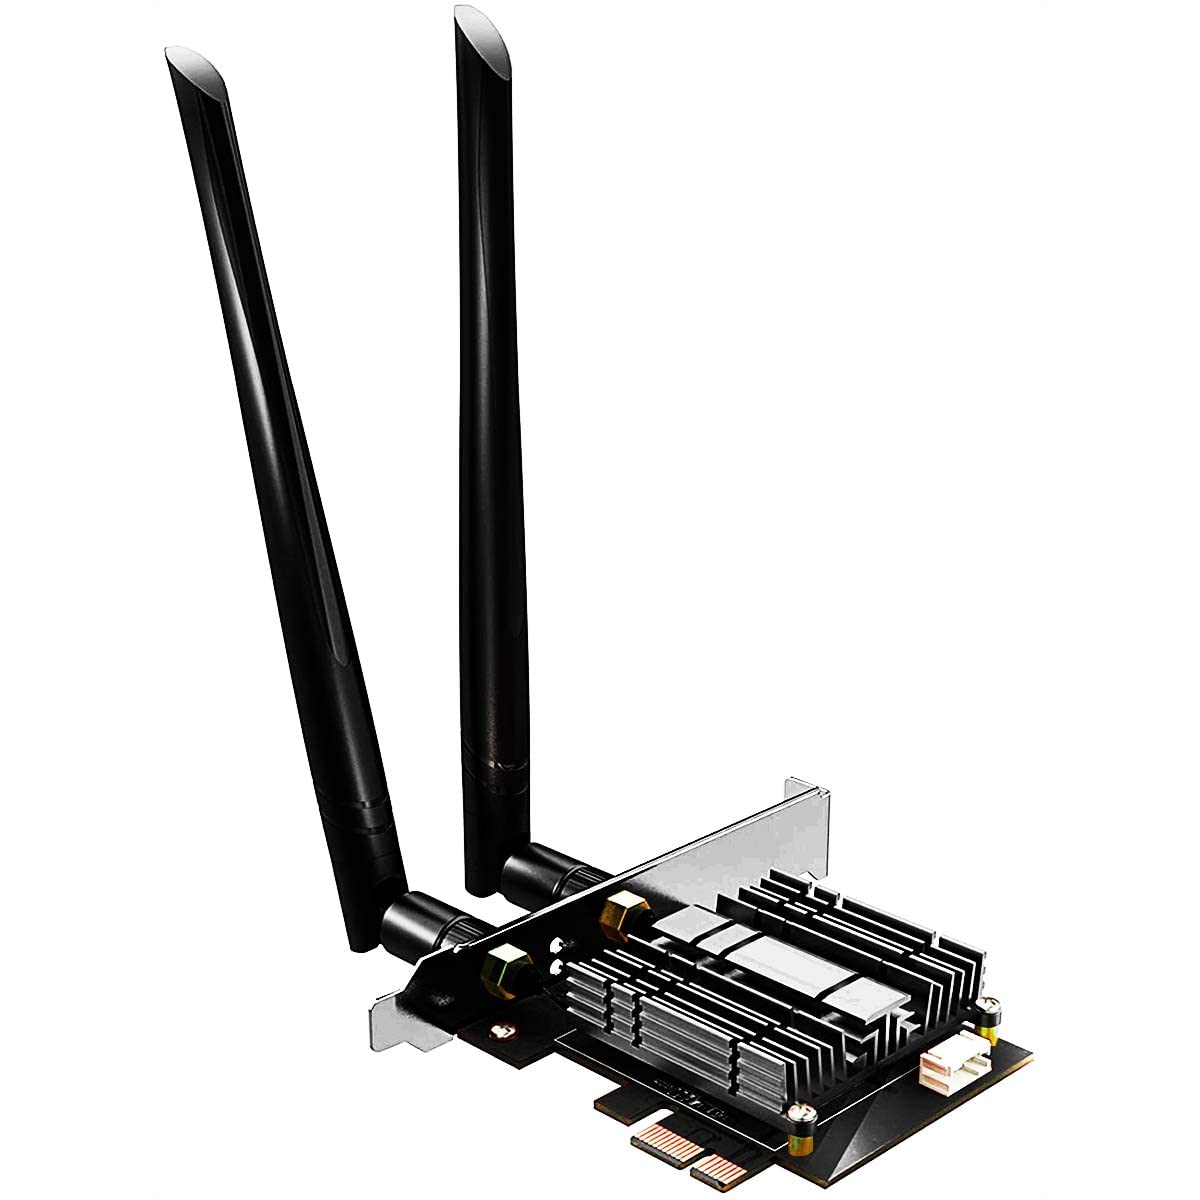 WiFi 5 AC1200 PCIe 無線lanカード、デス